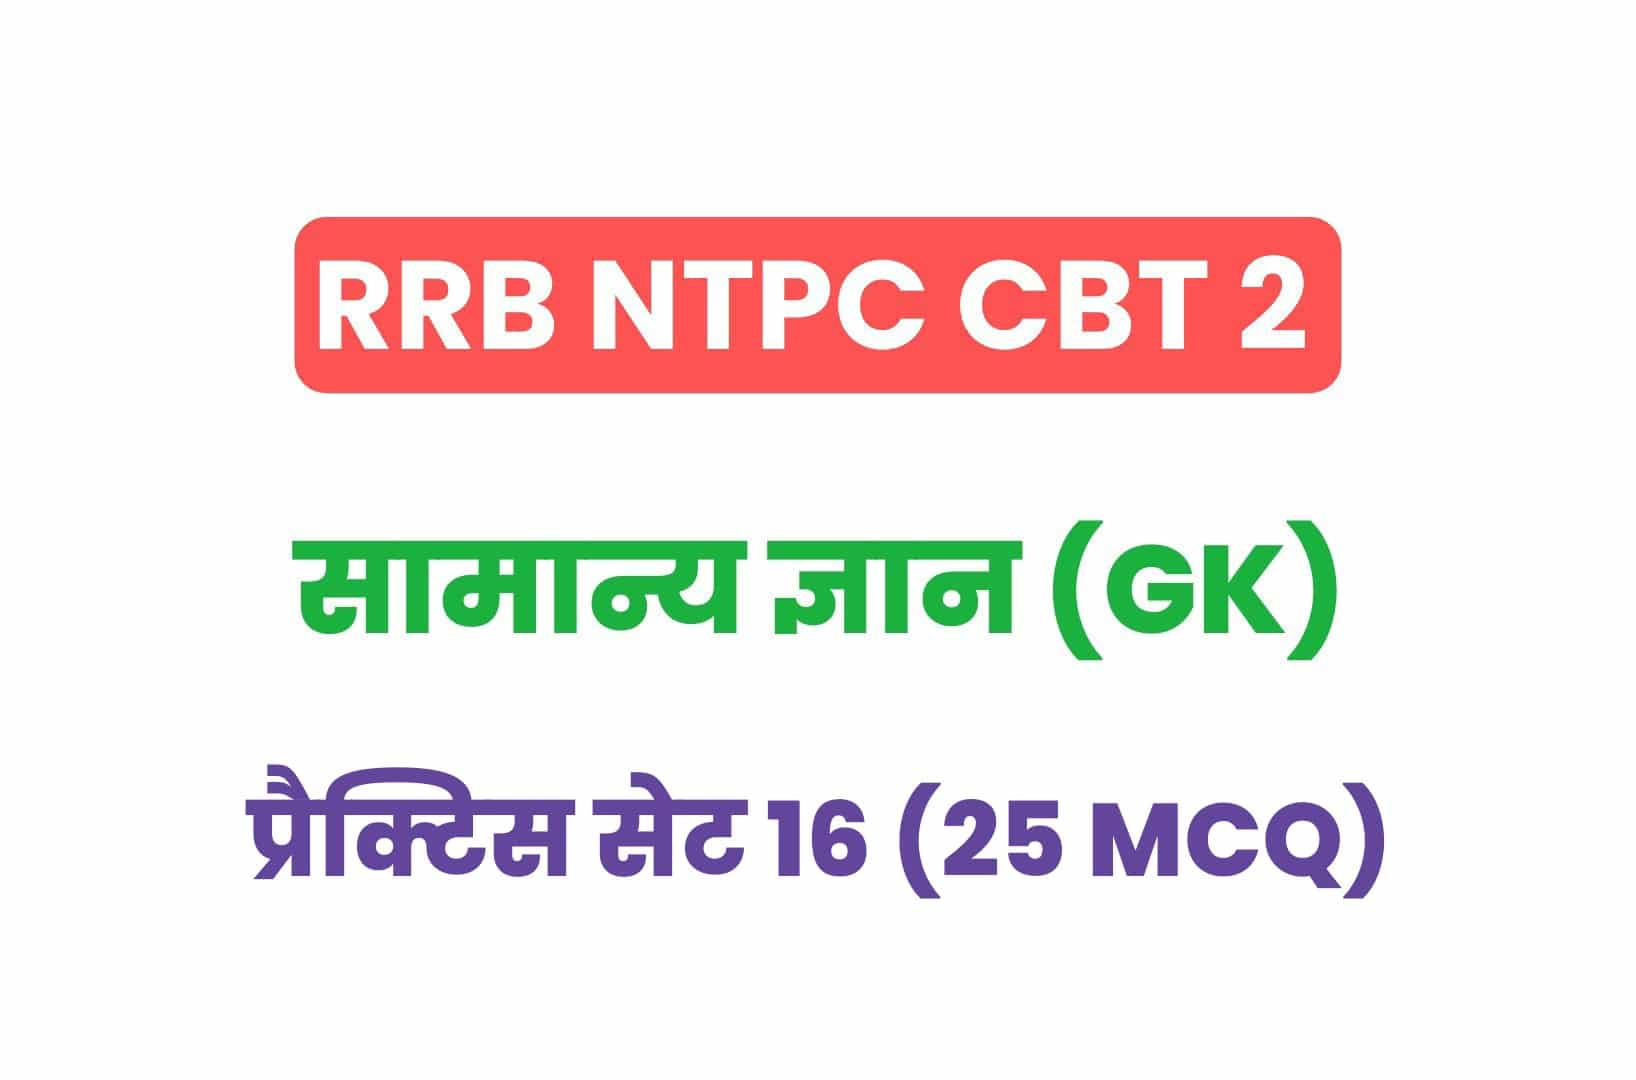 RRB NTPC CBT 2 GK प्रैक्टिस सेट 16: सामान्य ज्ञान के महत्वपूर्ण प्रश्नों का संग्रह, जरूर देखें